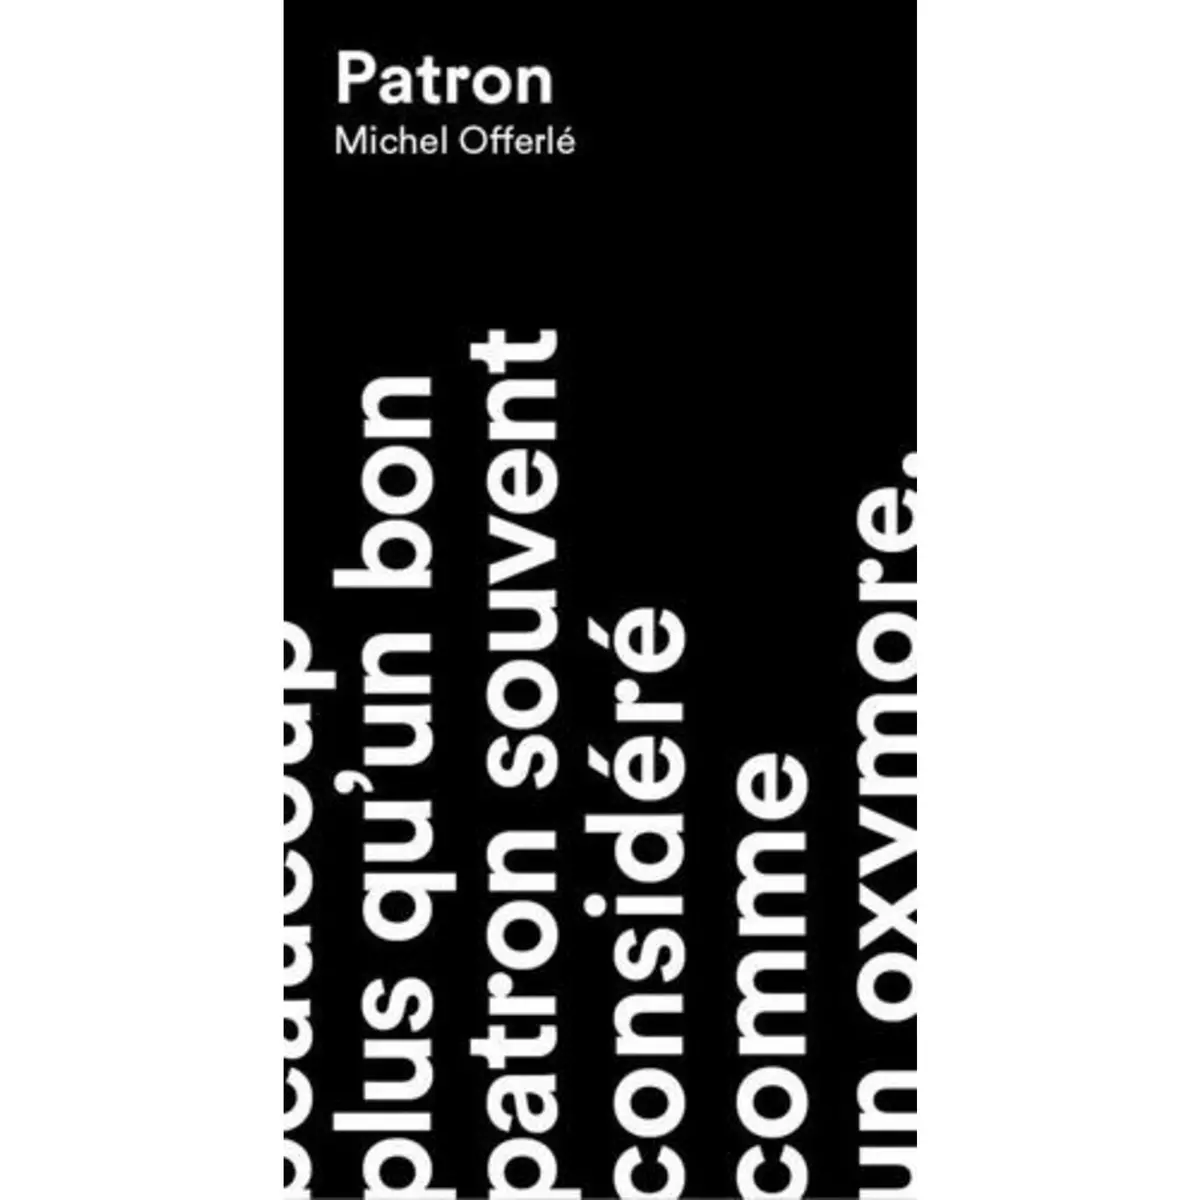  PATRON, Offerlé Michel